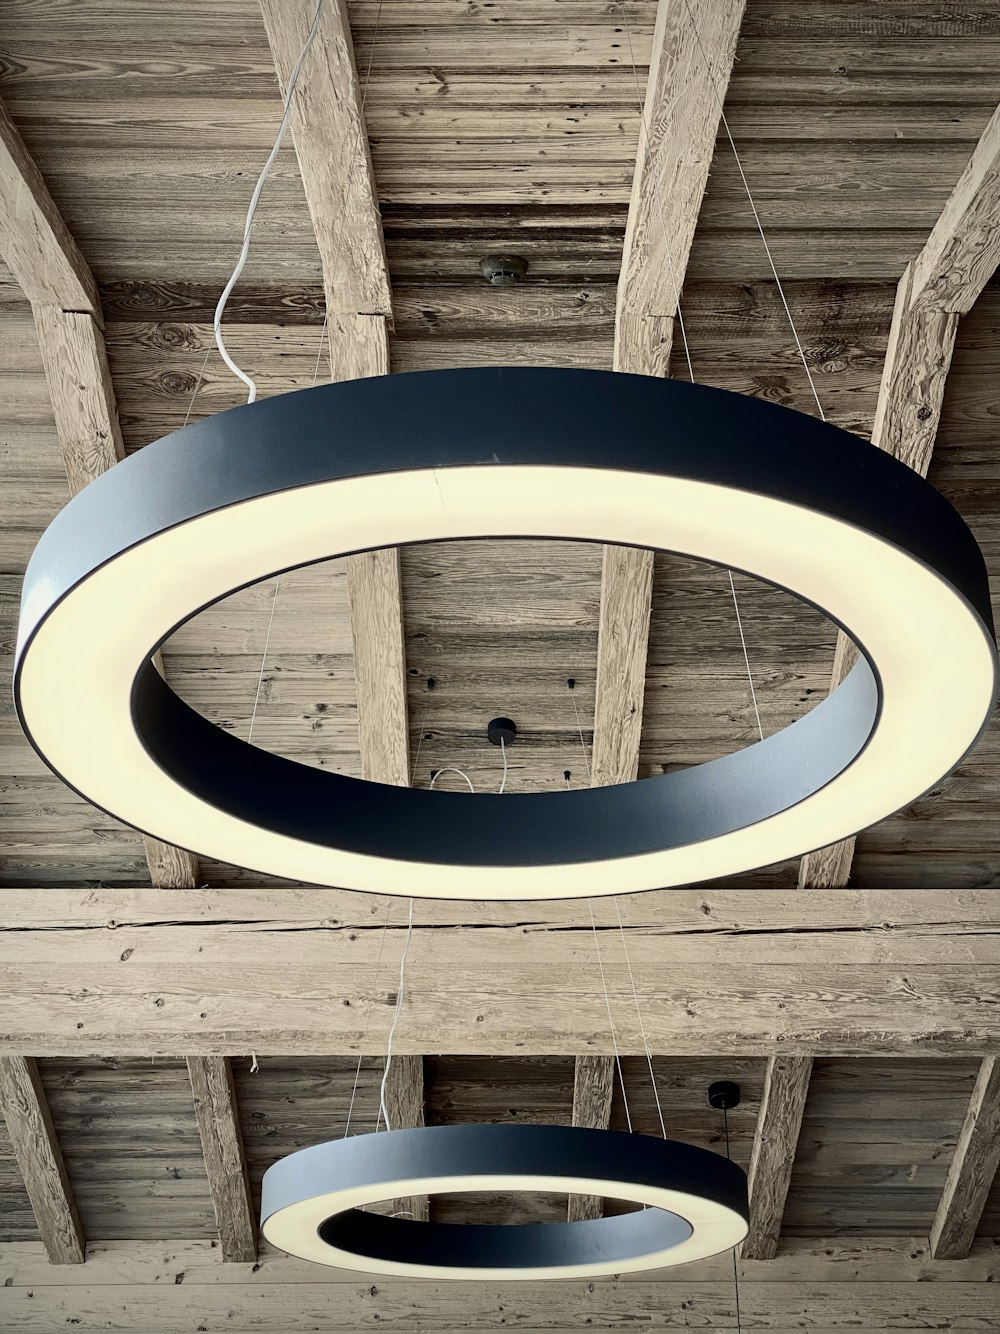 木製の天井からぶら下がっている円形の照明器具